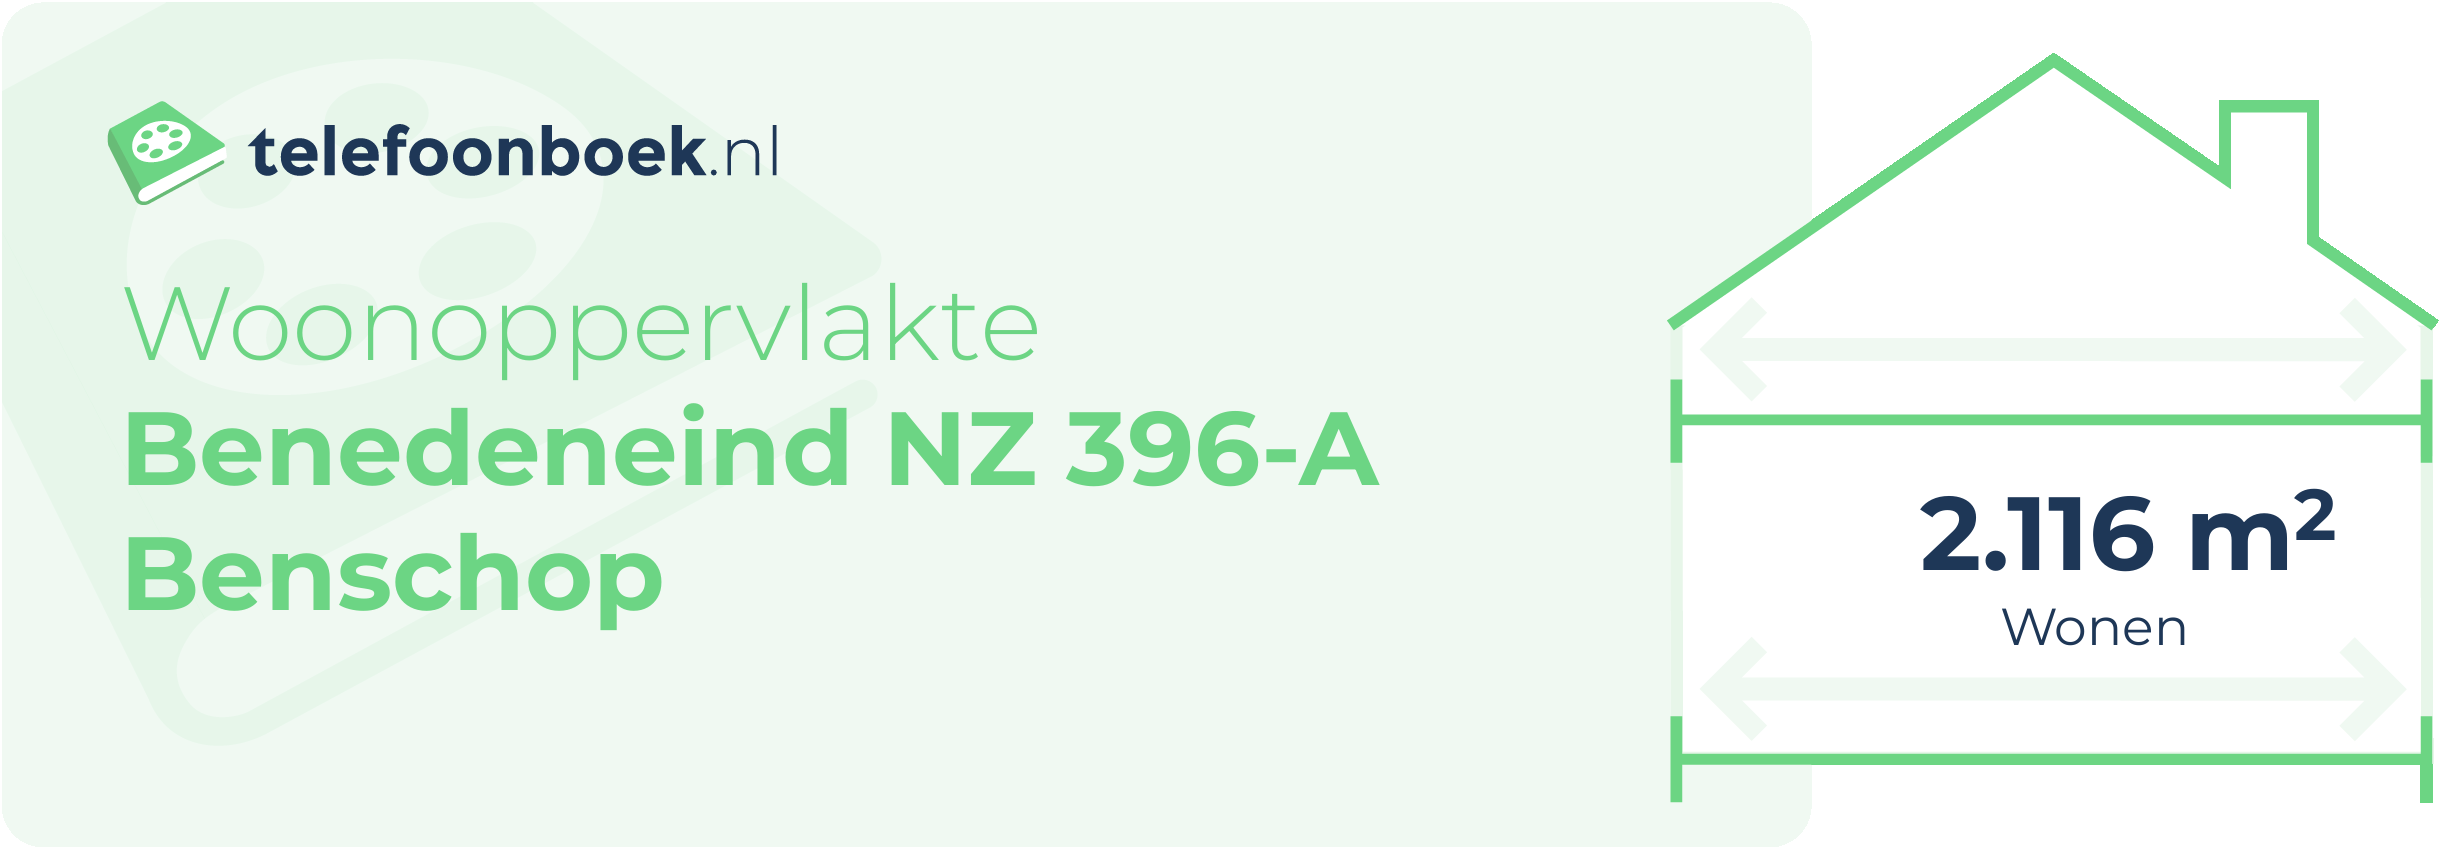 Woonoppervlakte Benedeneind NZ 396-A Benschop